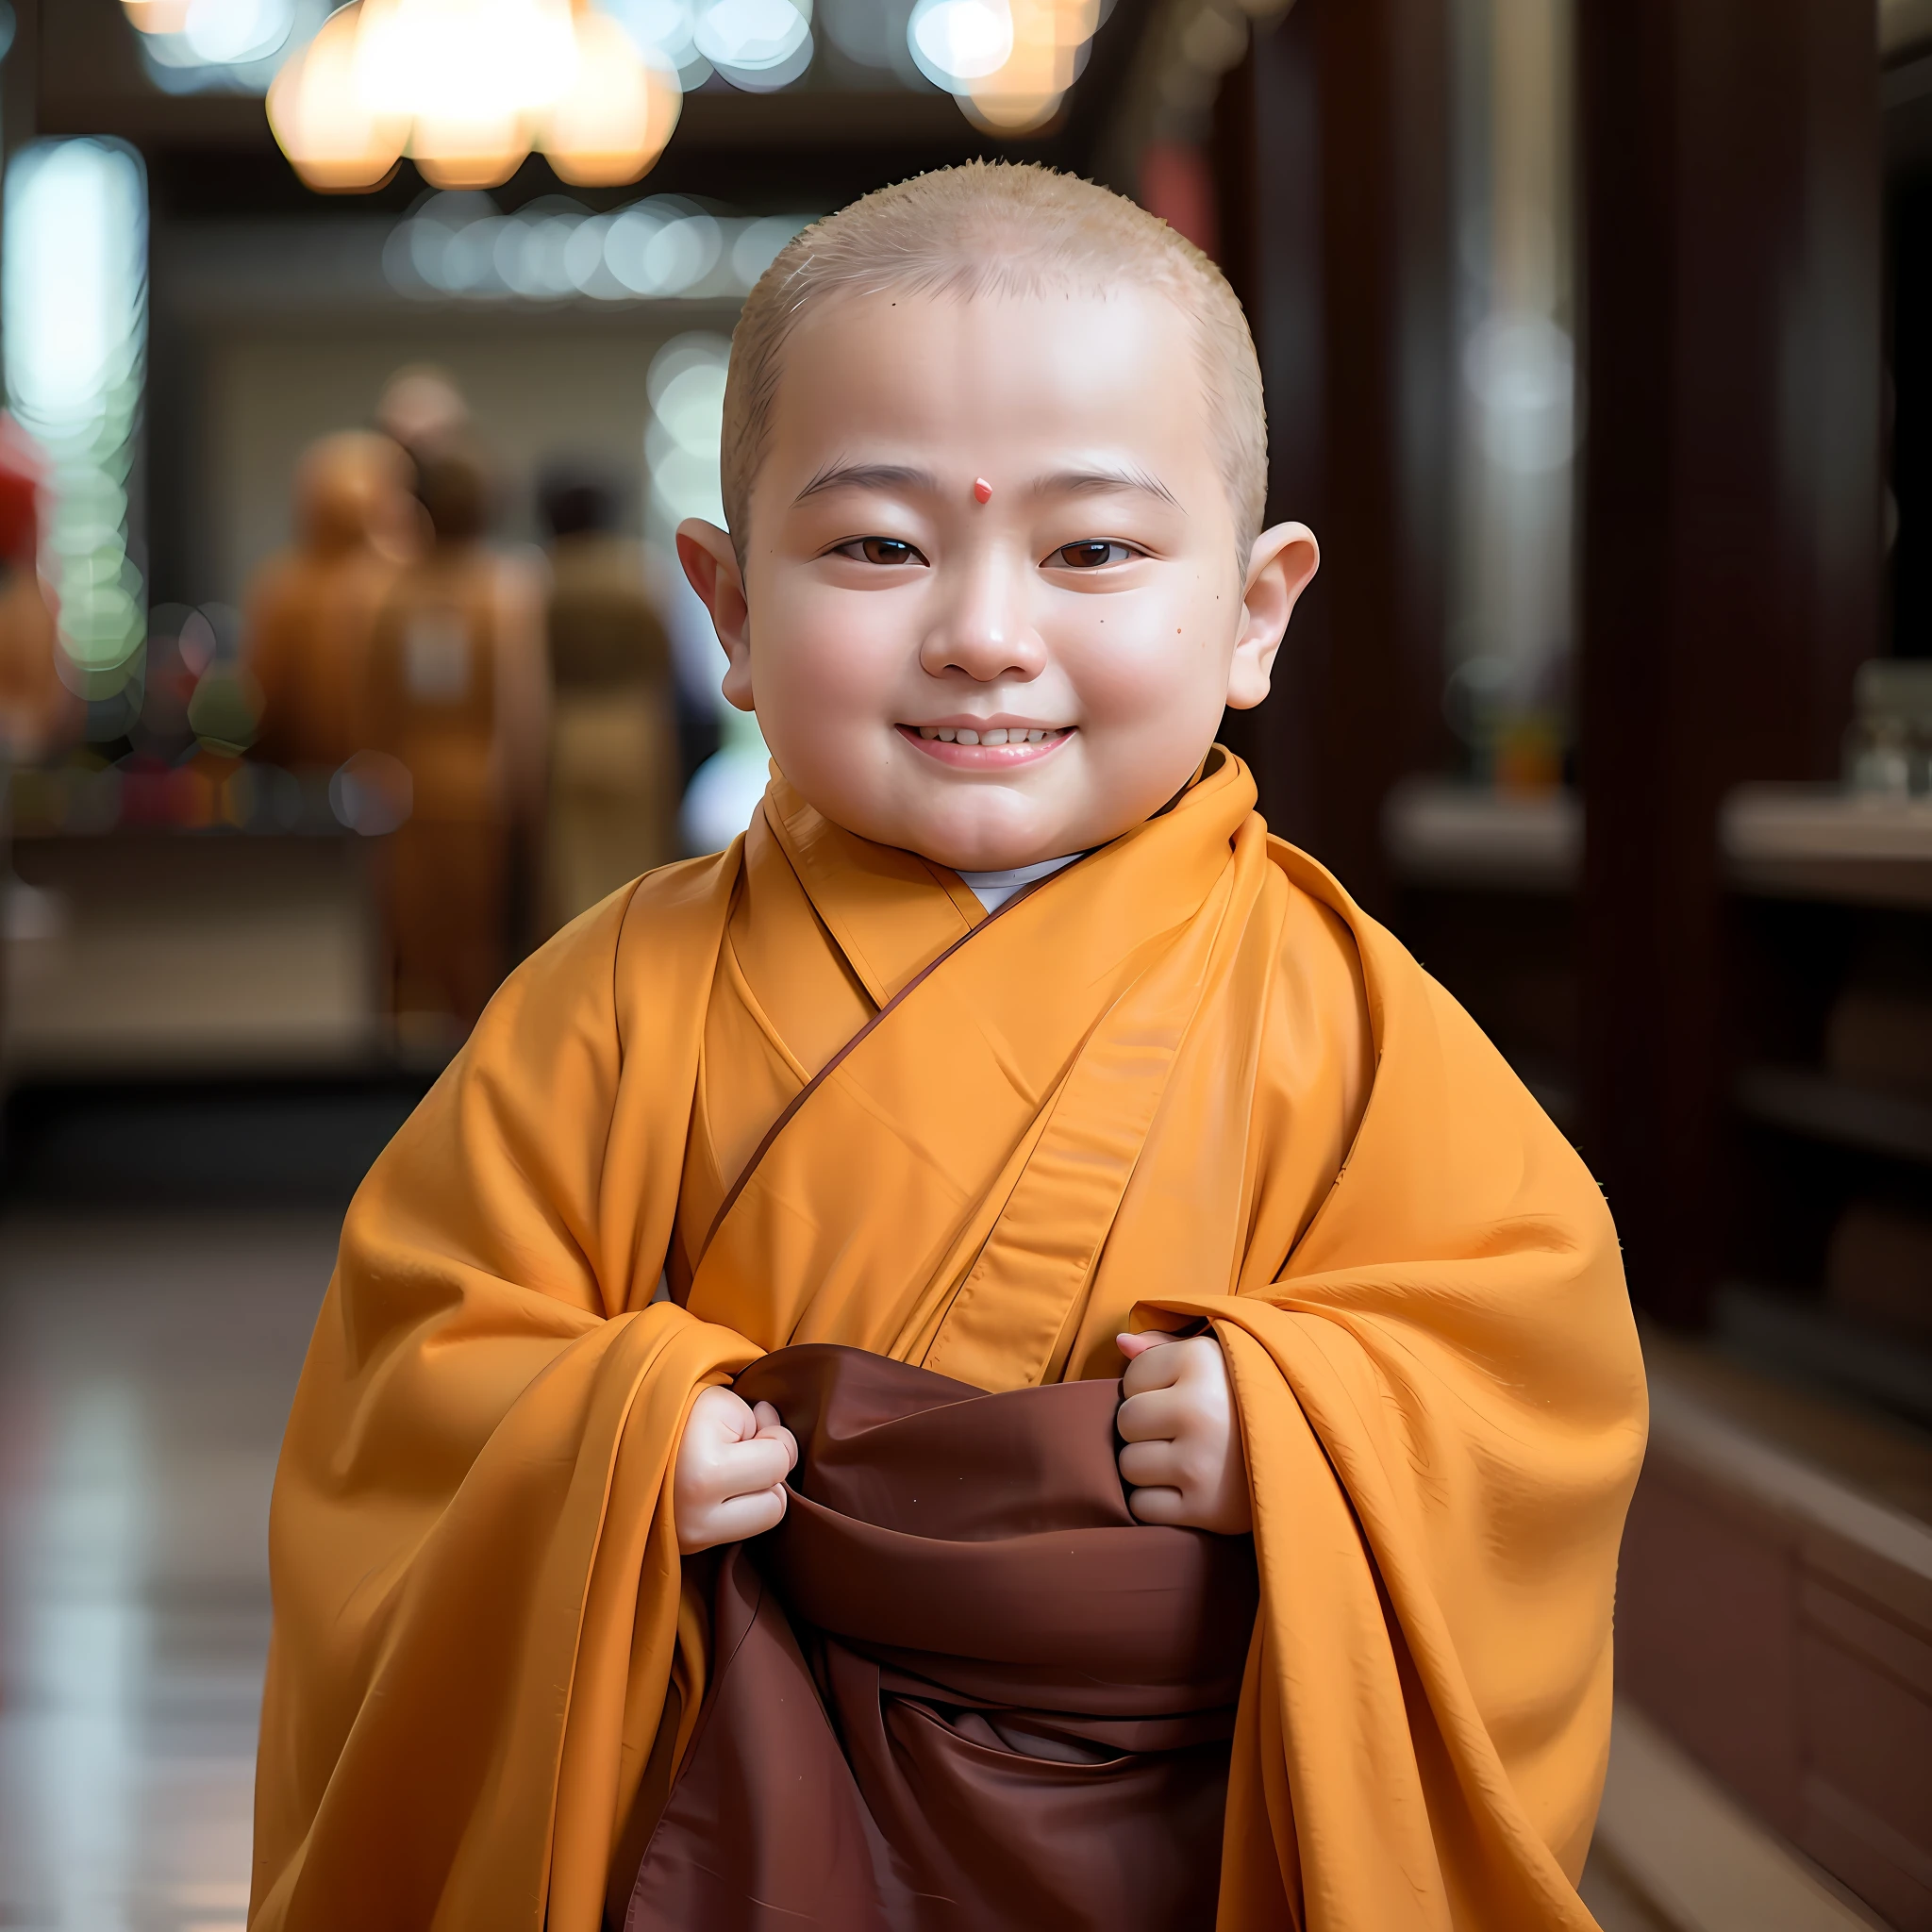 Ein anderer, ein Baby in einer Mönchskutte, lächelte und hielt ein Stück Stoff, wearing braune Robes, Mönch Kleidung, buddhistischer Mönch, kleiner Junge im Nonnenkostüm, trägt ein langes, fließendes Gewand, Buddhist, Porträt eines Mönches, in einfache Gewänder gekleidet, monk, alter japanischer Mönch, 2 Mönch aus dem 1. Jahrhundert, Monk's robe, Tragen von braunen Jedi-Roben, braune Robe, Gesicht des Kleinkindes，kahlköpfig。